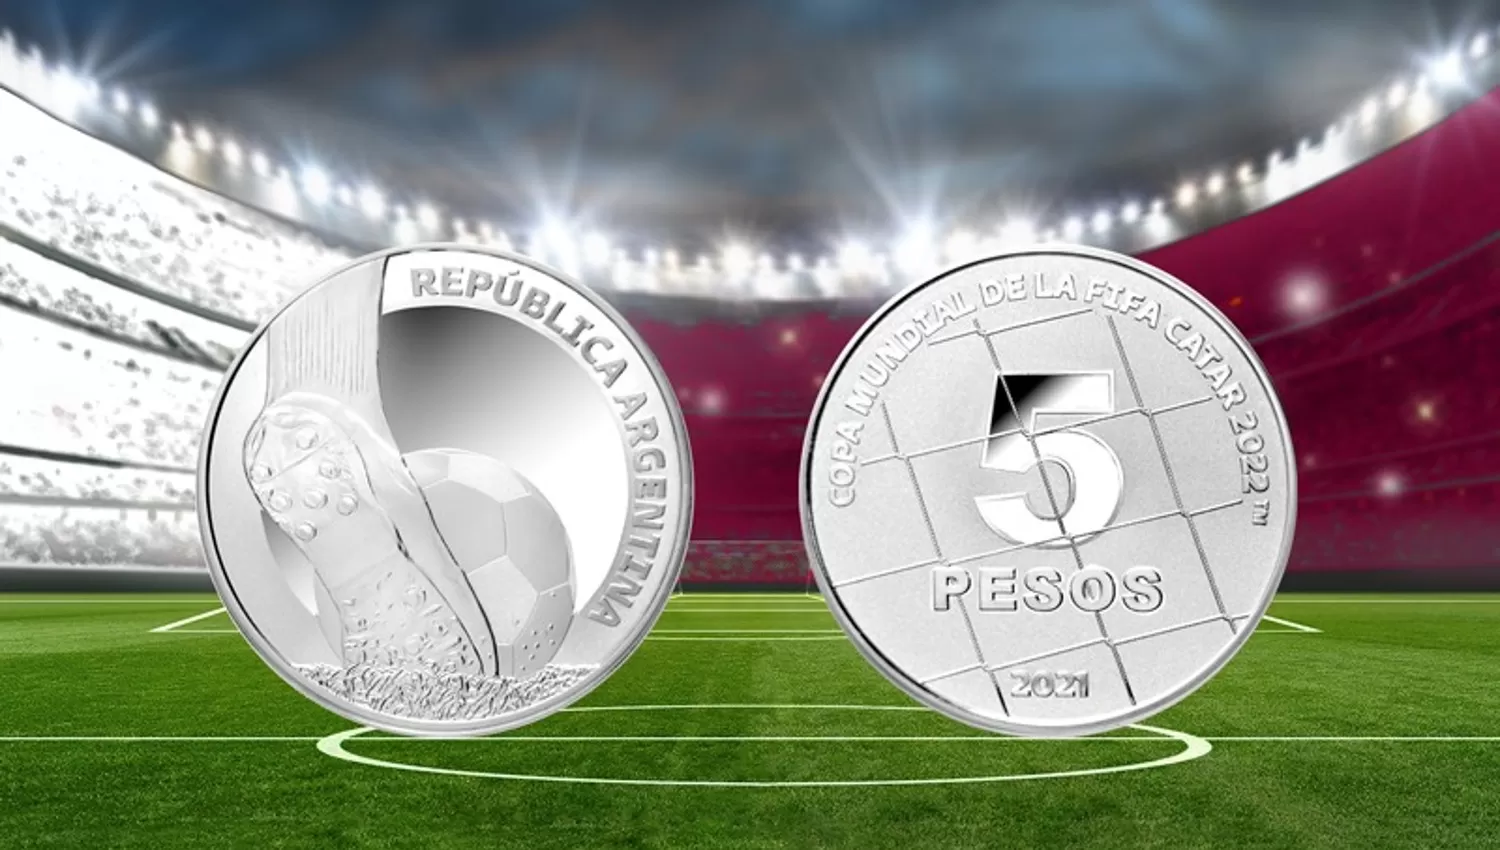 MONEDA DEL MUNDIAL. El Banco Central emitió una moneda de plata alusiva a la Copa Mundial de Fútbol que se desarrollará Catar.